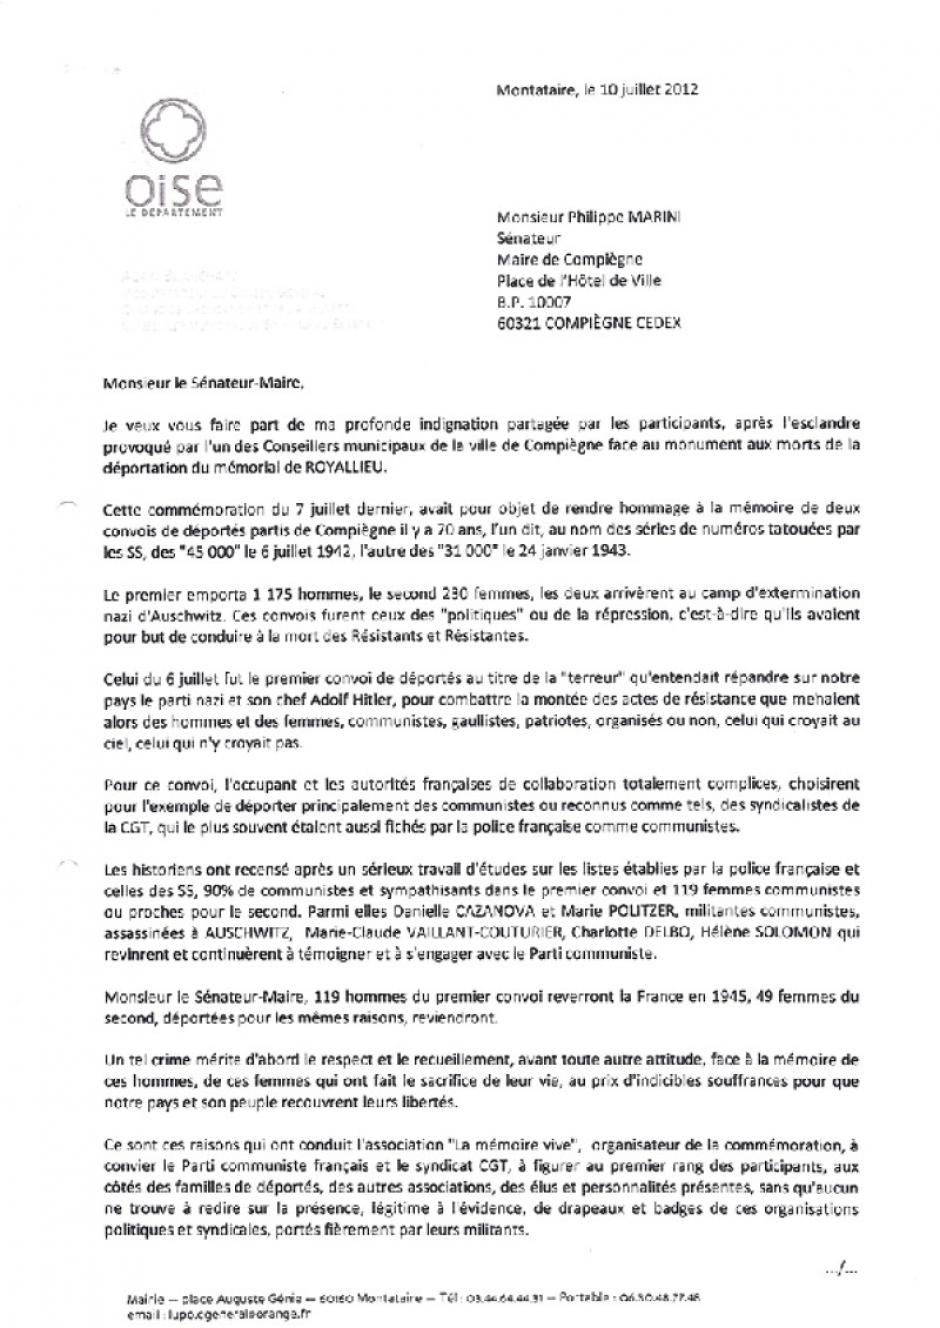 Courrier d'Alain Blanchard au maire de Compiègne Philippe Marini après les incidents de la commémoration du 7 juillet - 10 juillet 2012